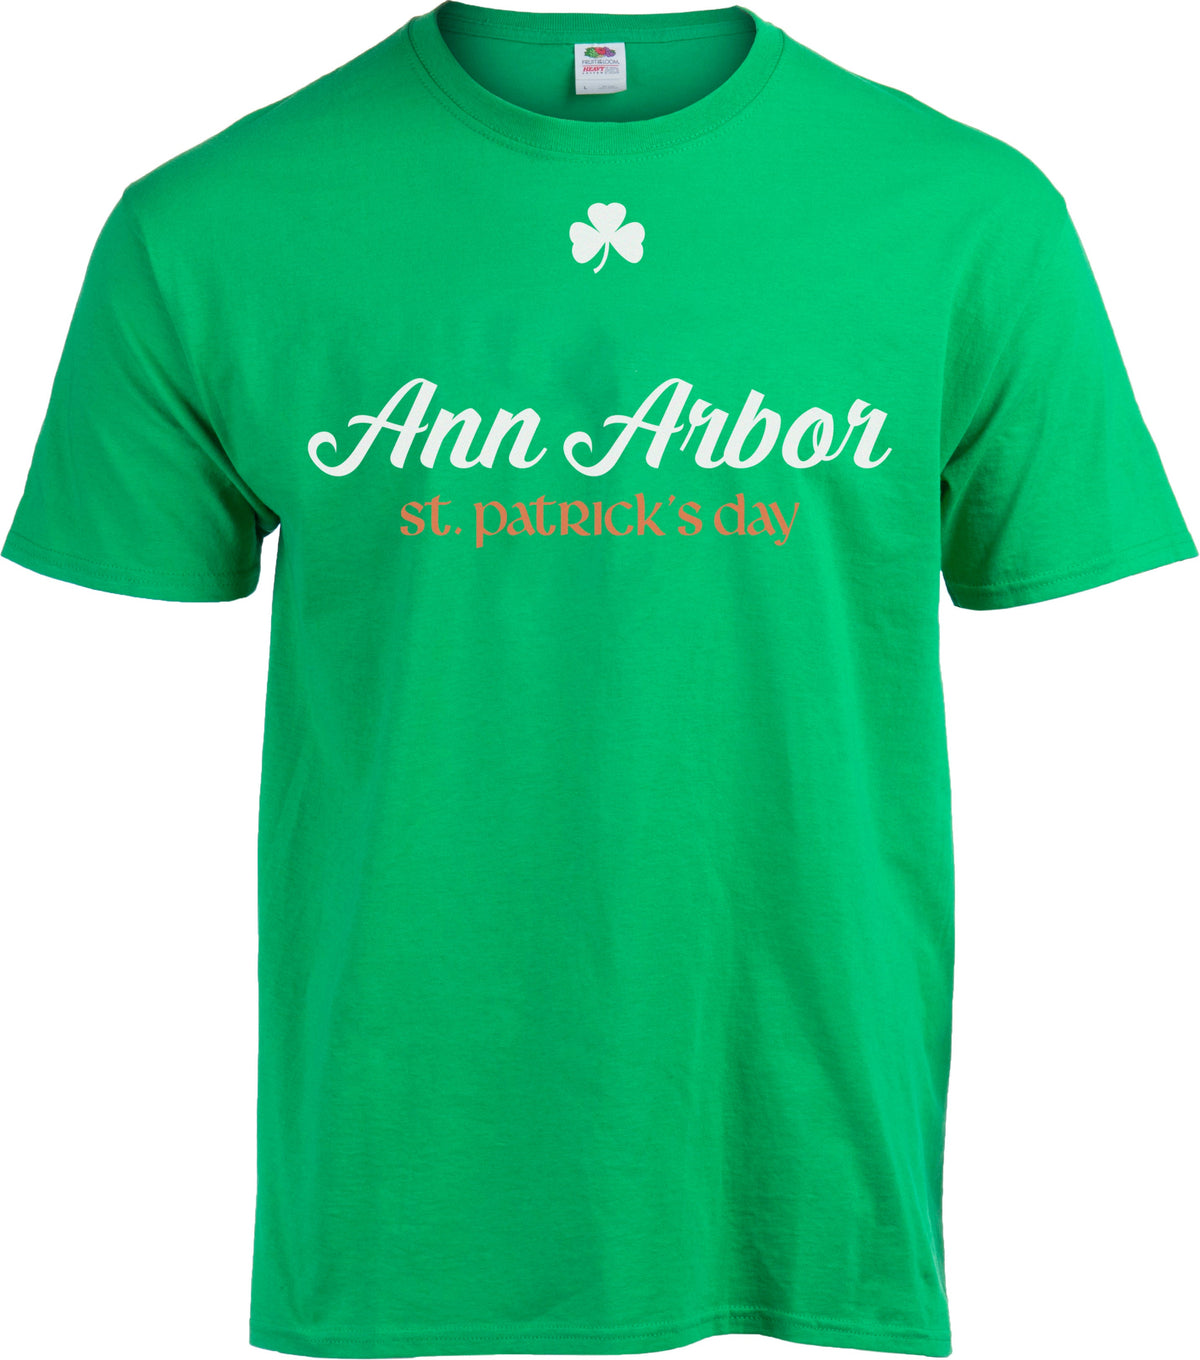 Ann Arbor, MI - St. Patrick's Day T-shirt - Men's/Unisex